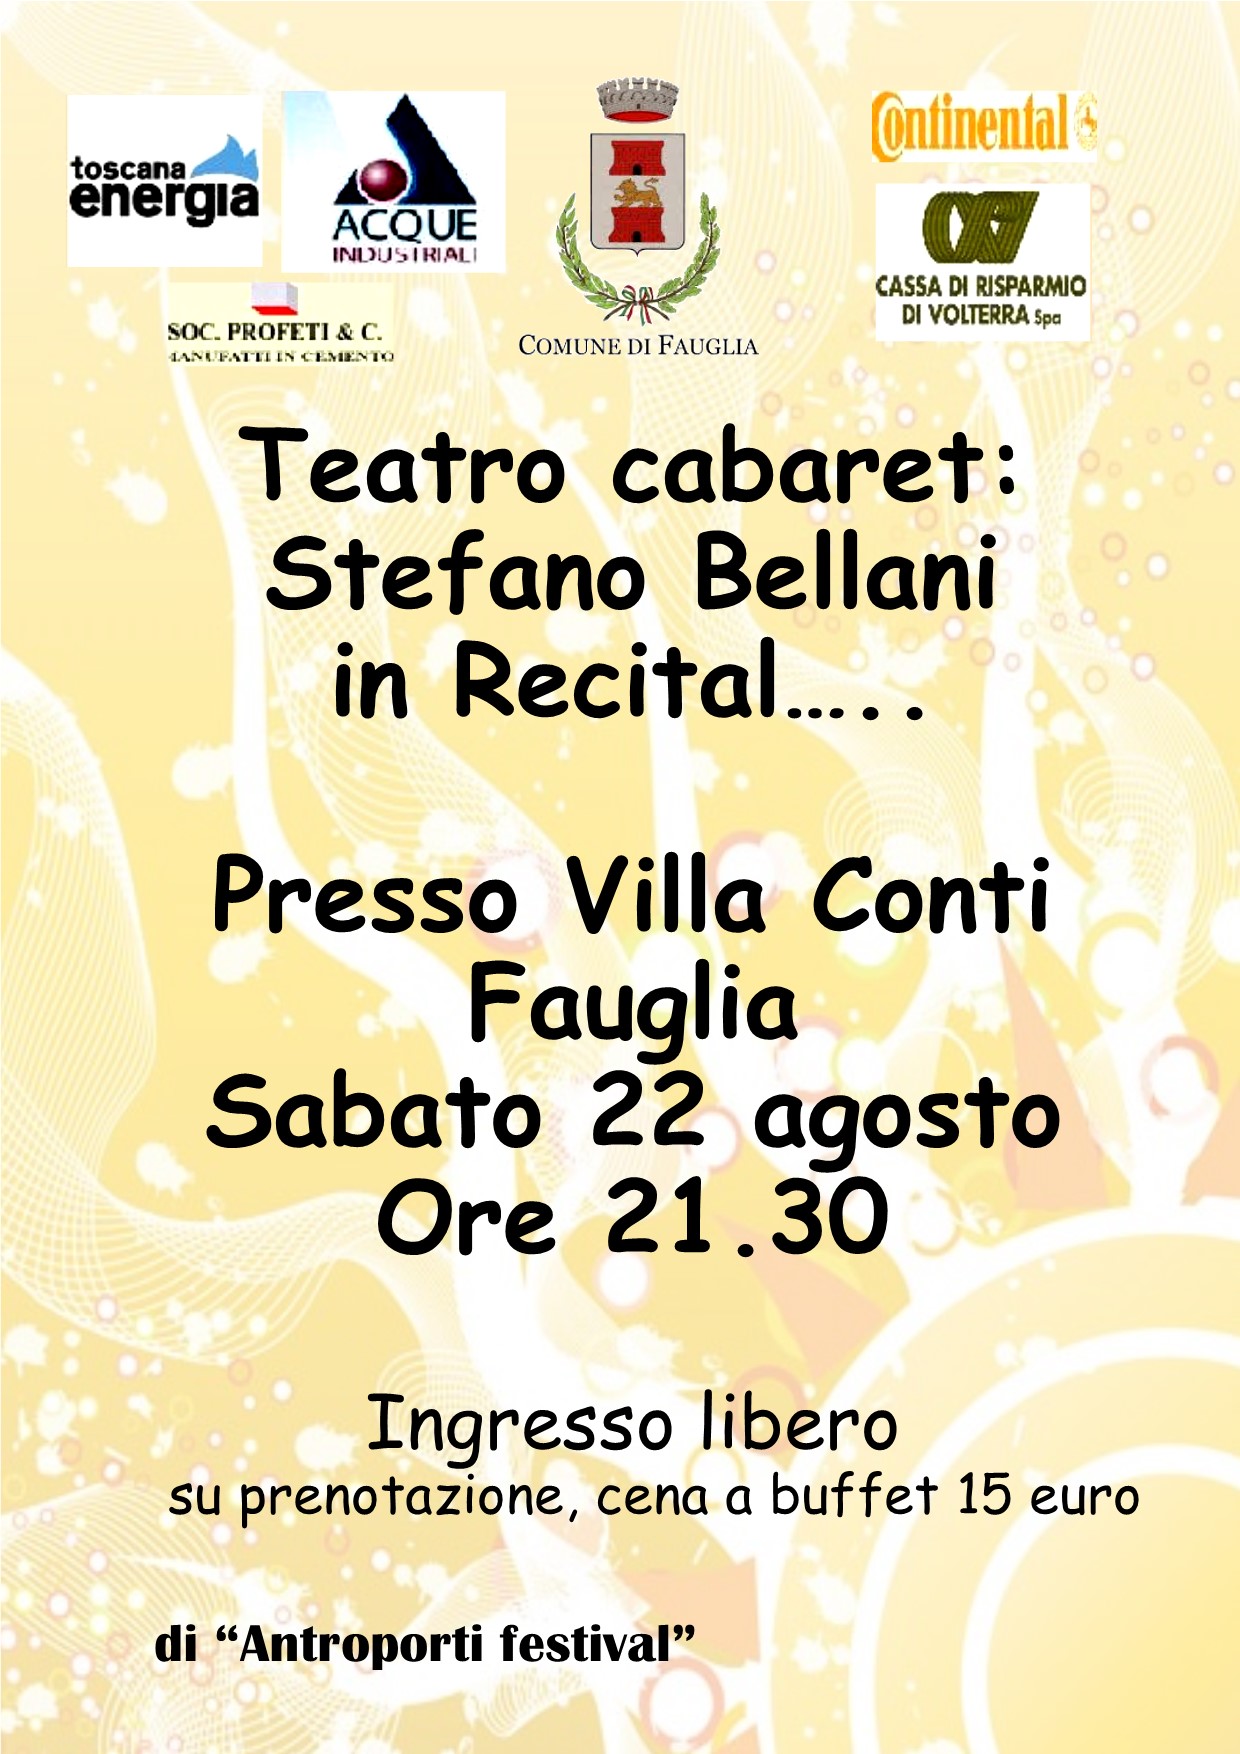 Teatro cabaret: Stefano Bellani in recital...